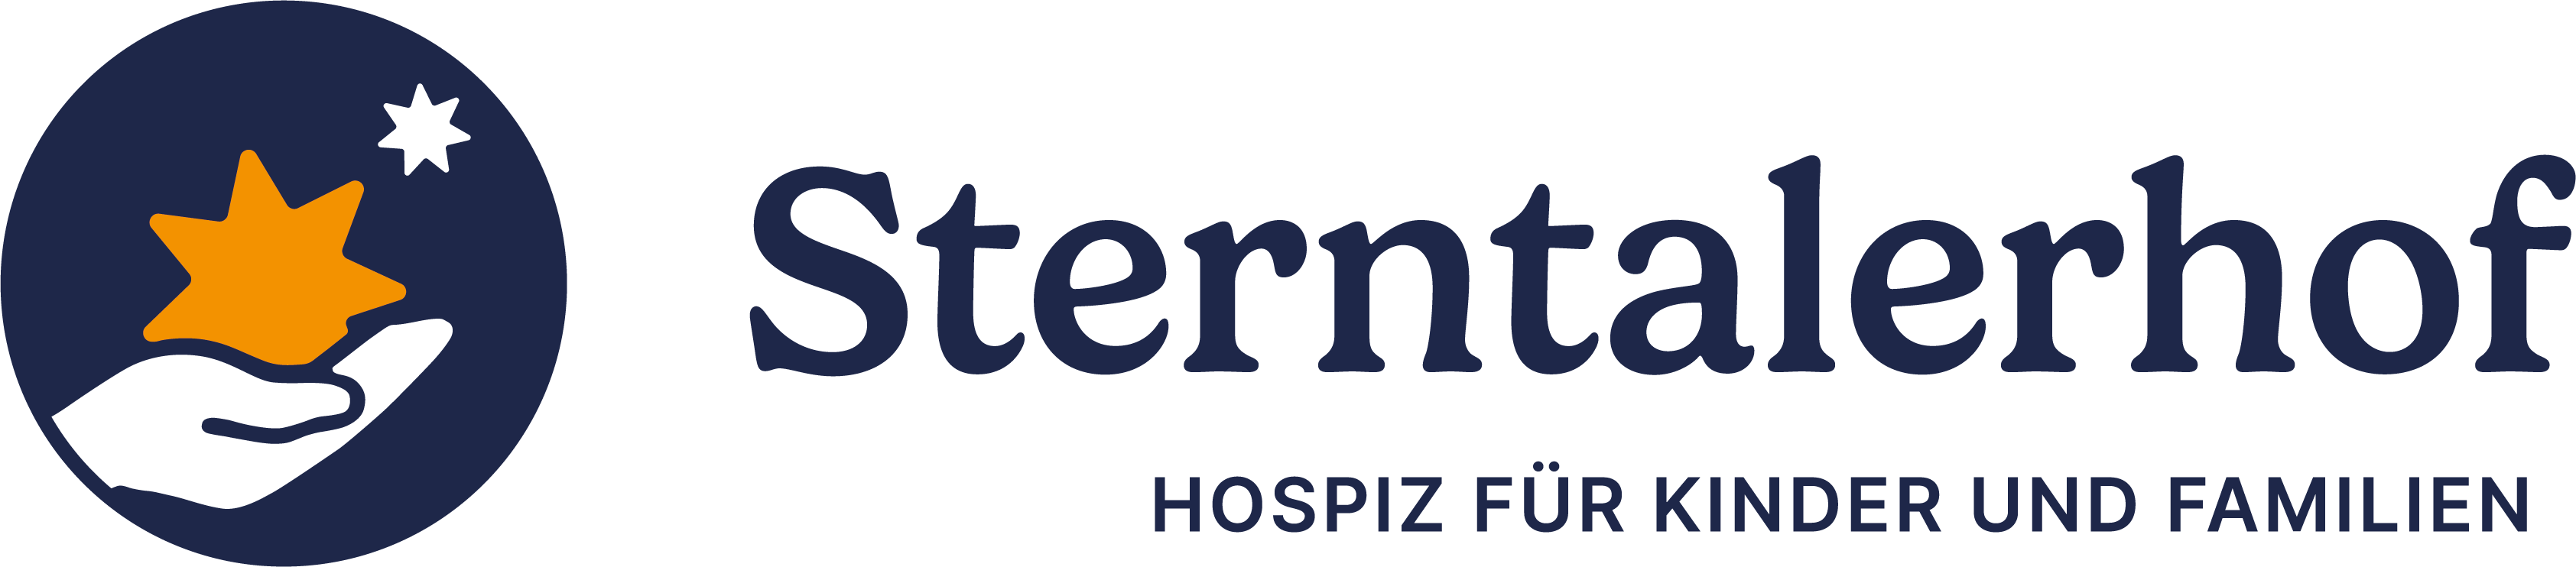 Sterntalerhof - Logo